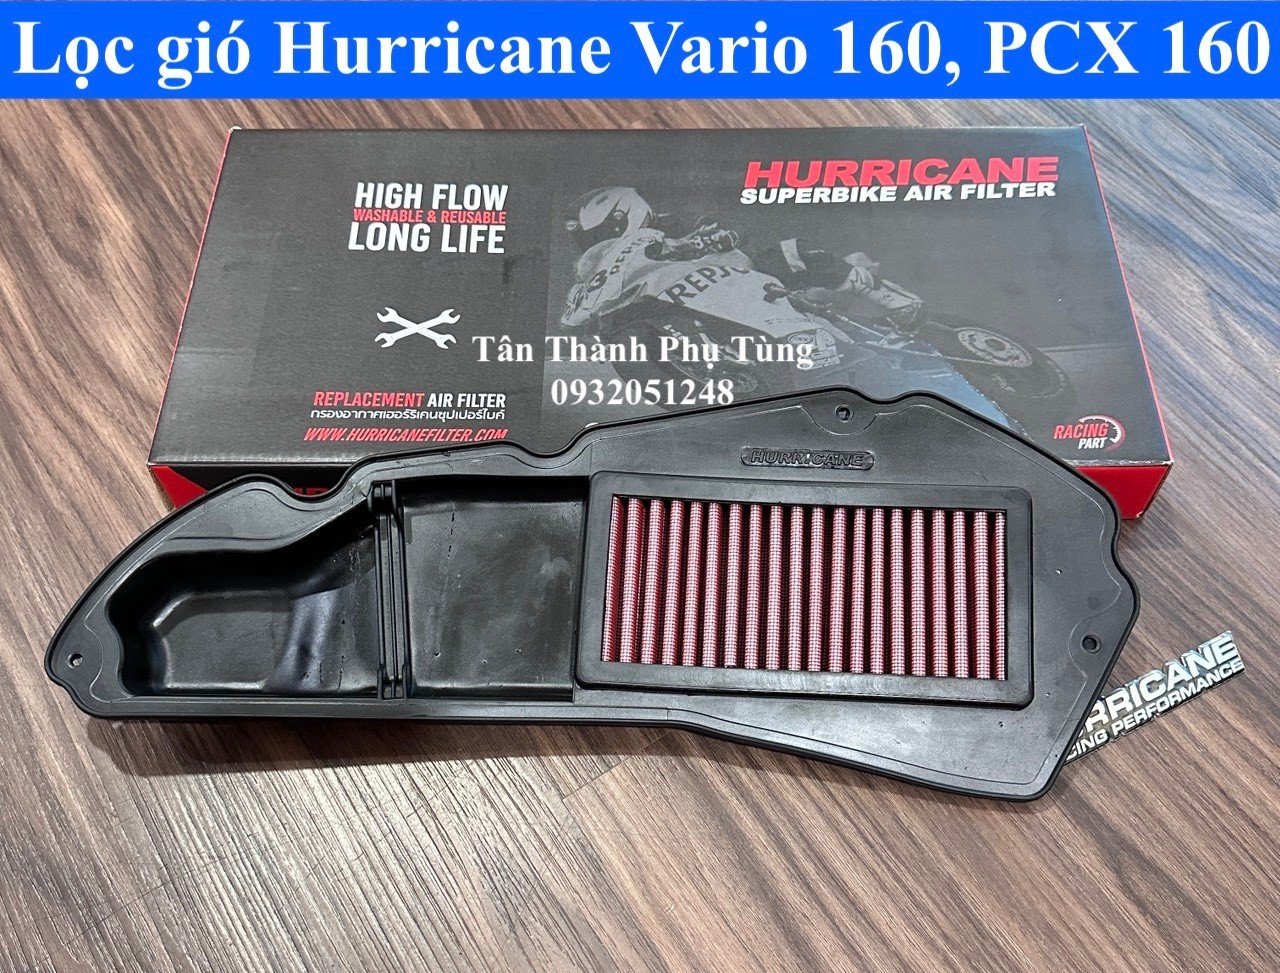 Lọc gió Hurricane Vario 160, PCX 160, ADV 160 chính hãng Thailand